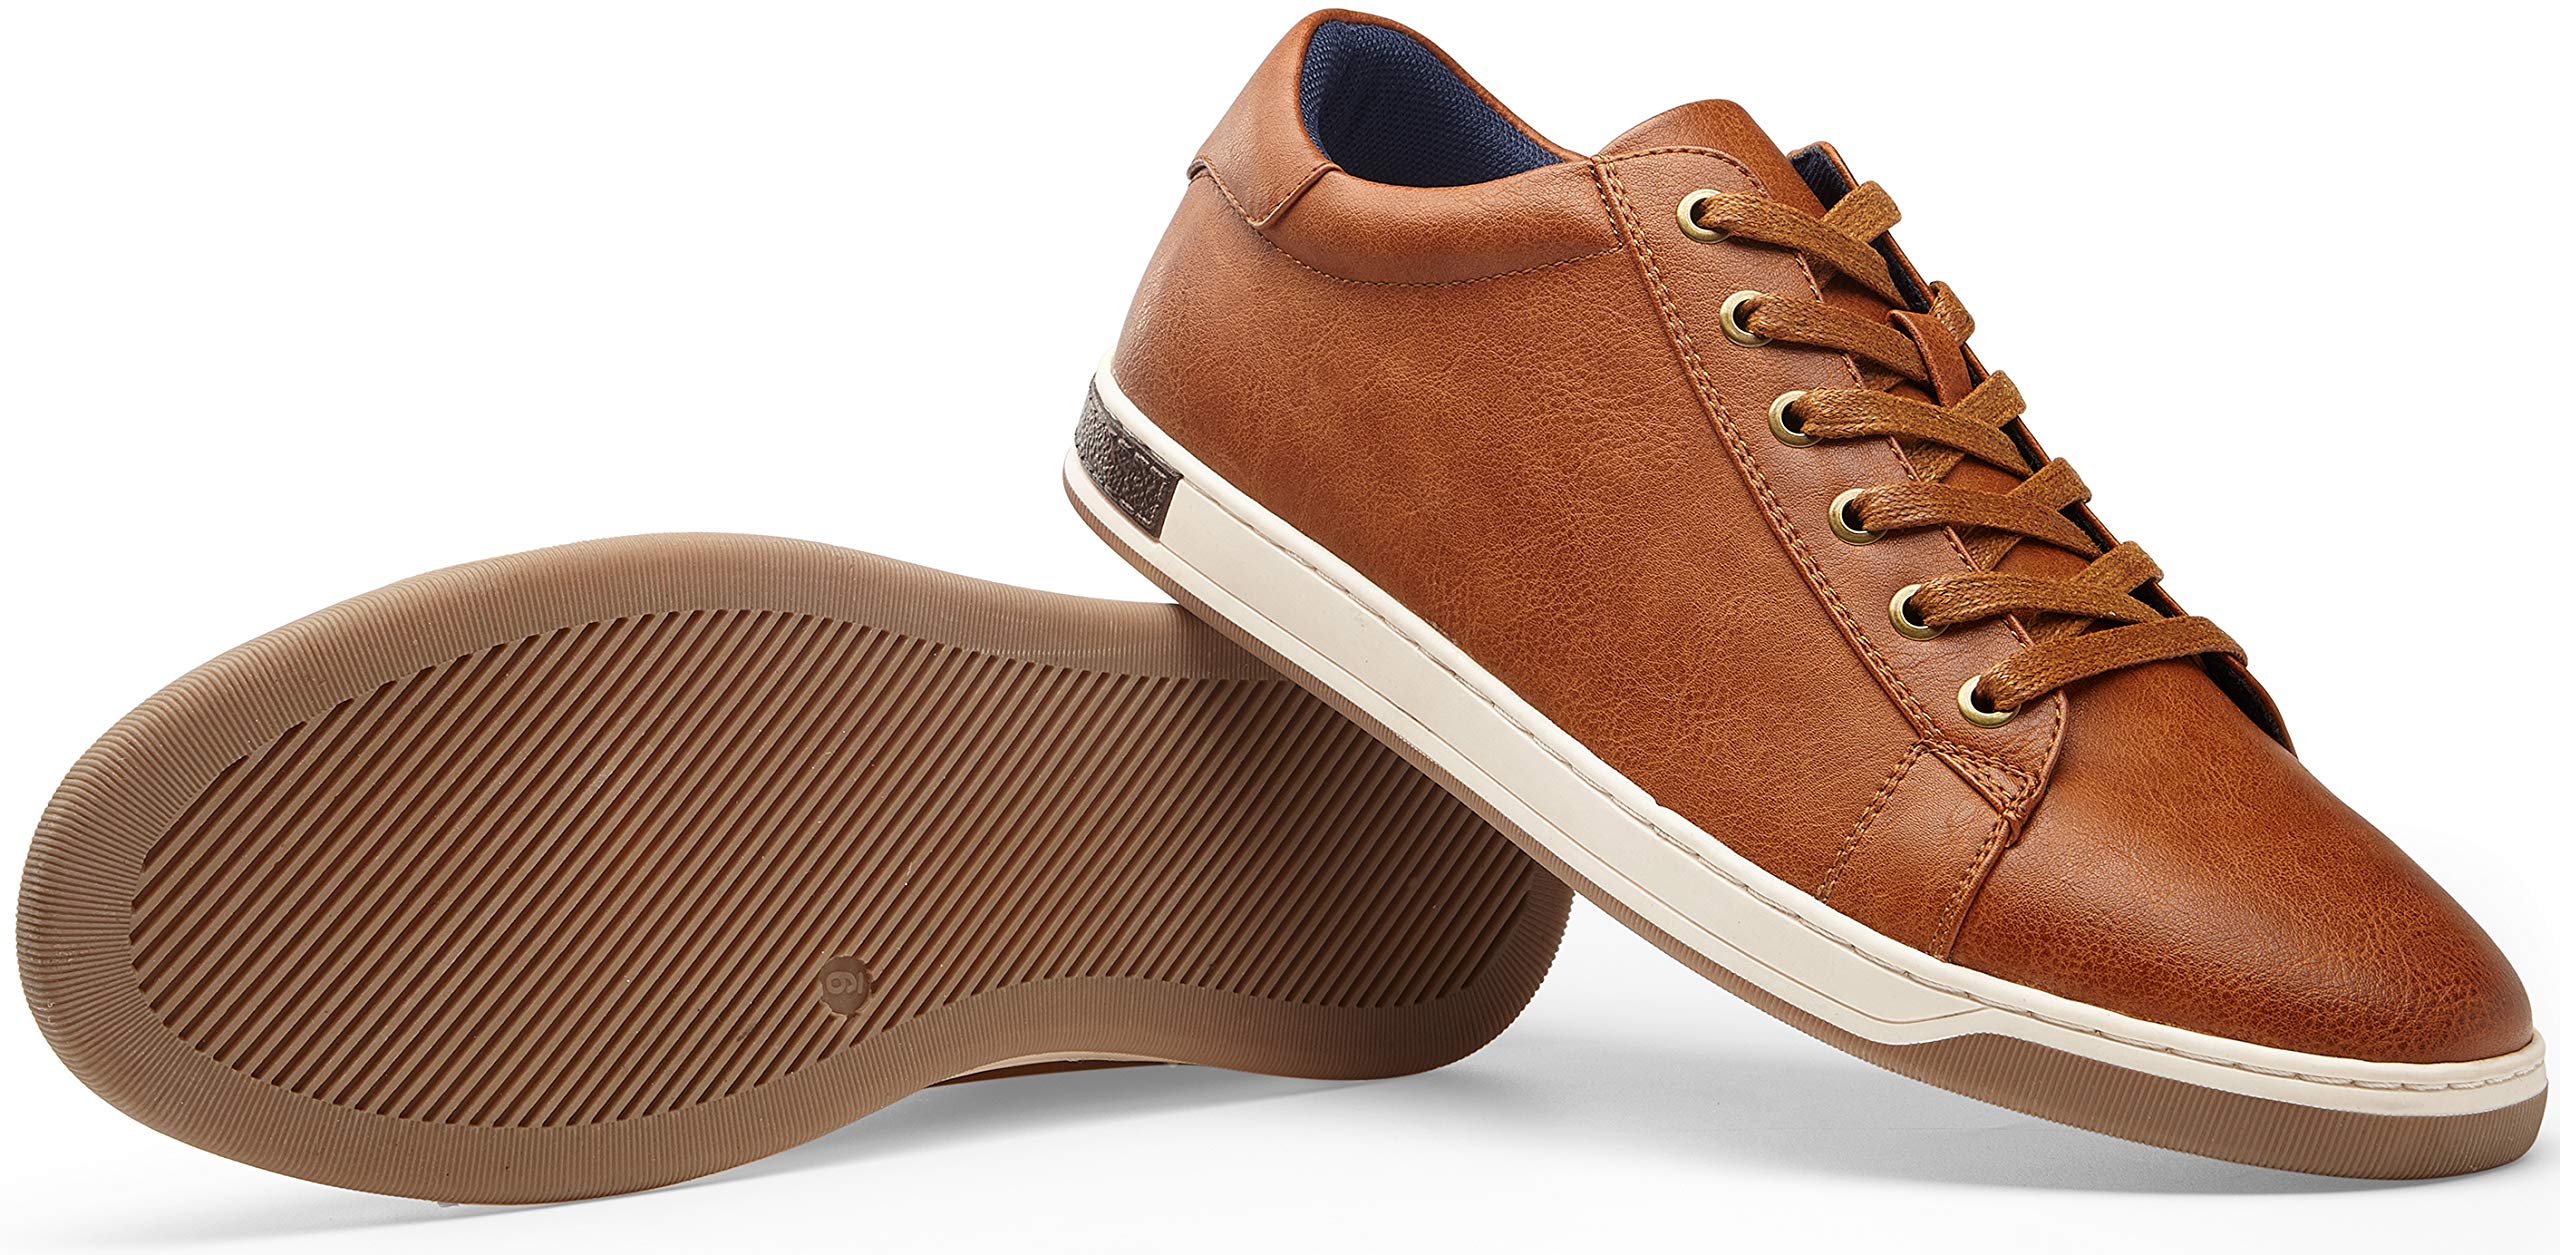 Jousen Men's Fashion Sneakers Retro Simple Casual Shoes for Men